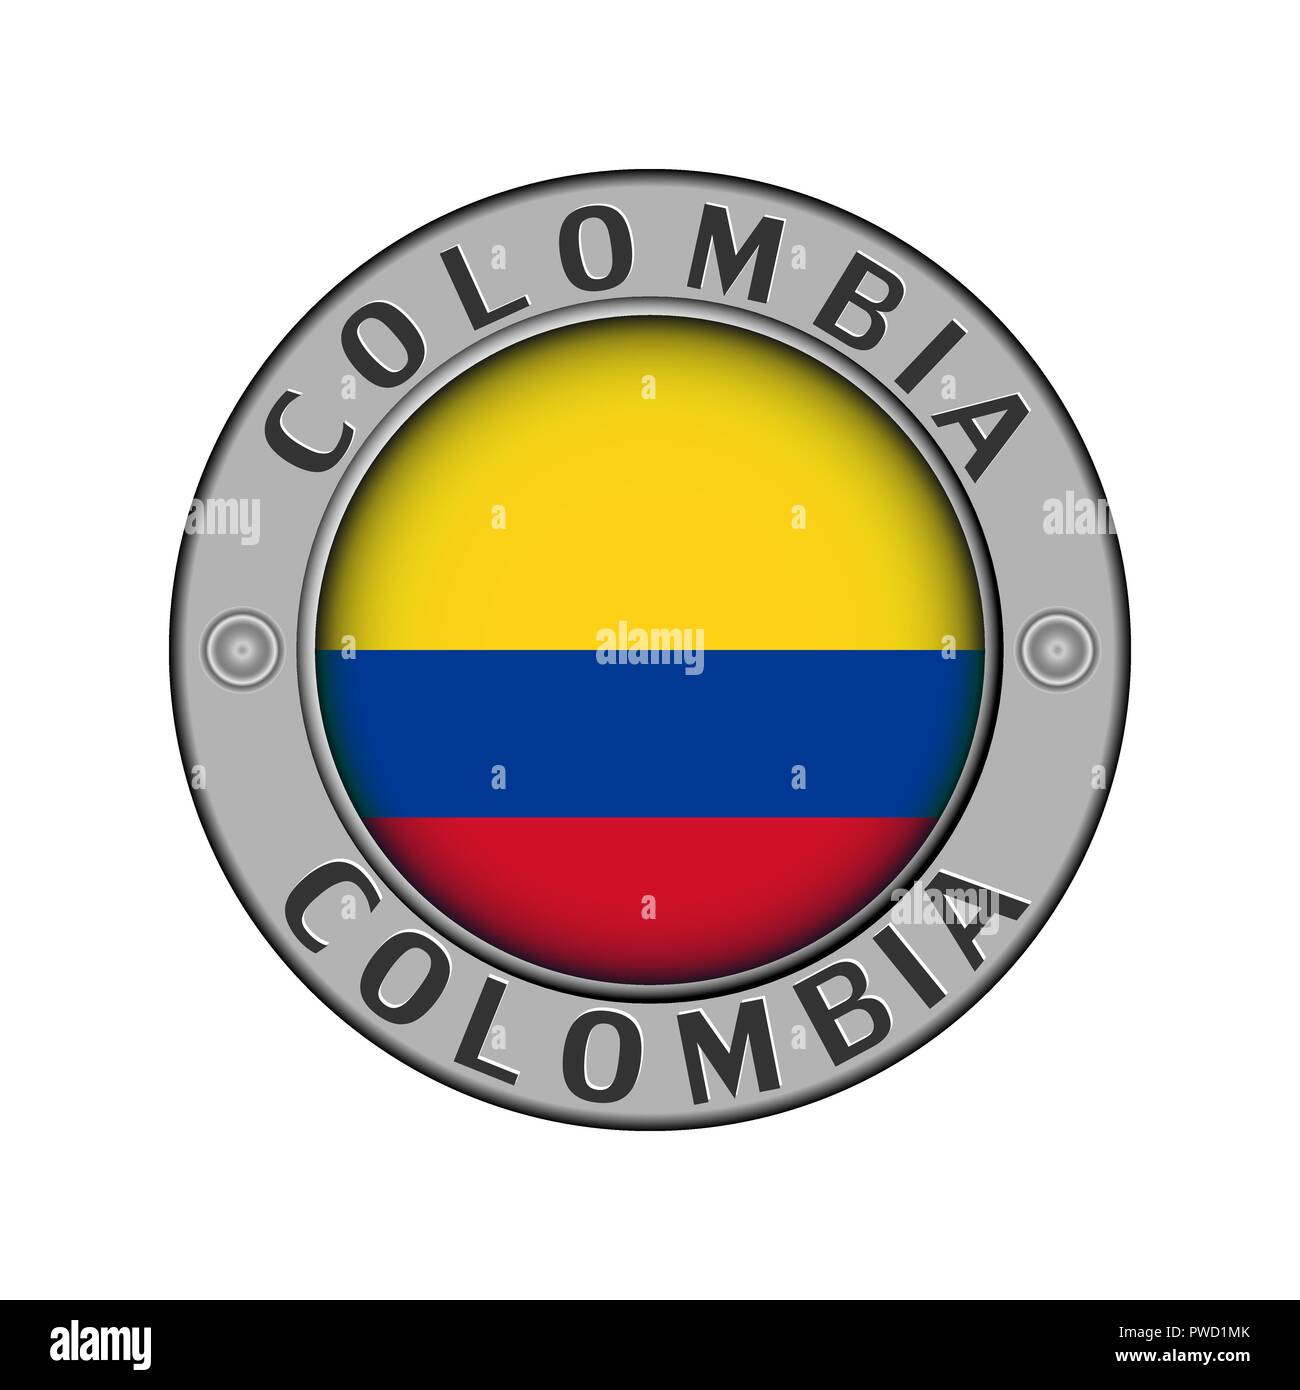 Médaillon rond en métal avec le nom du pays de la Colombie et une ronde au centre du pavillon Illustration de Vecteur